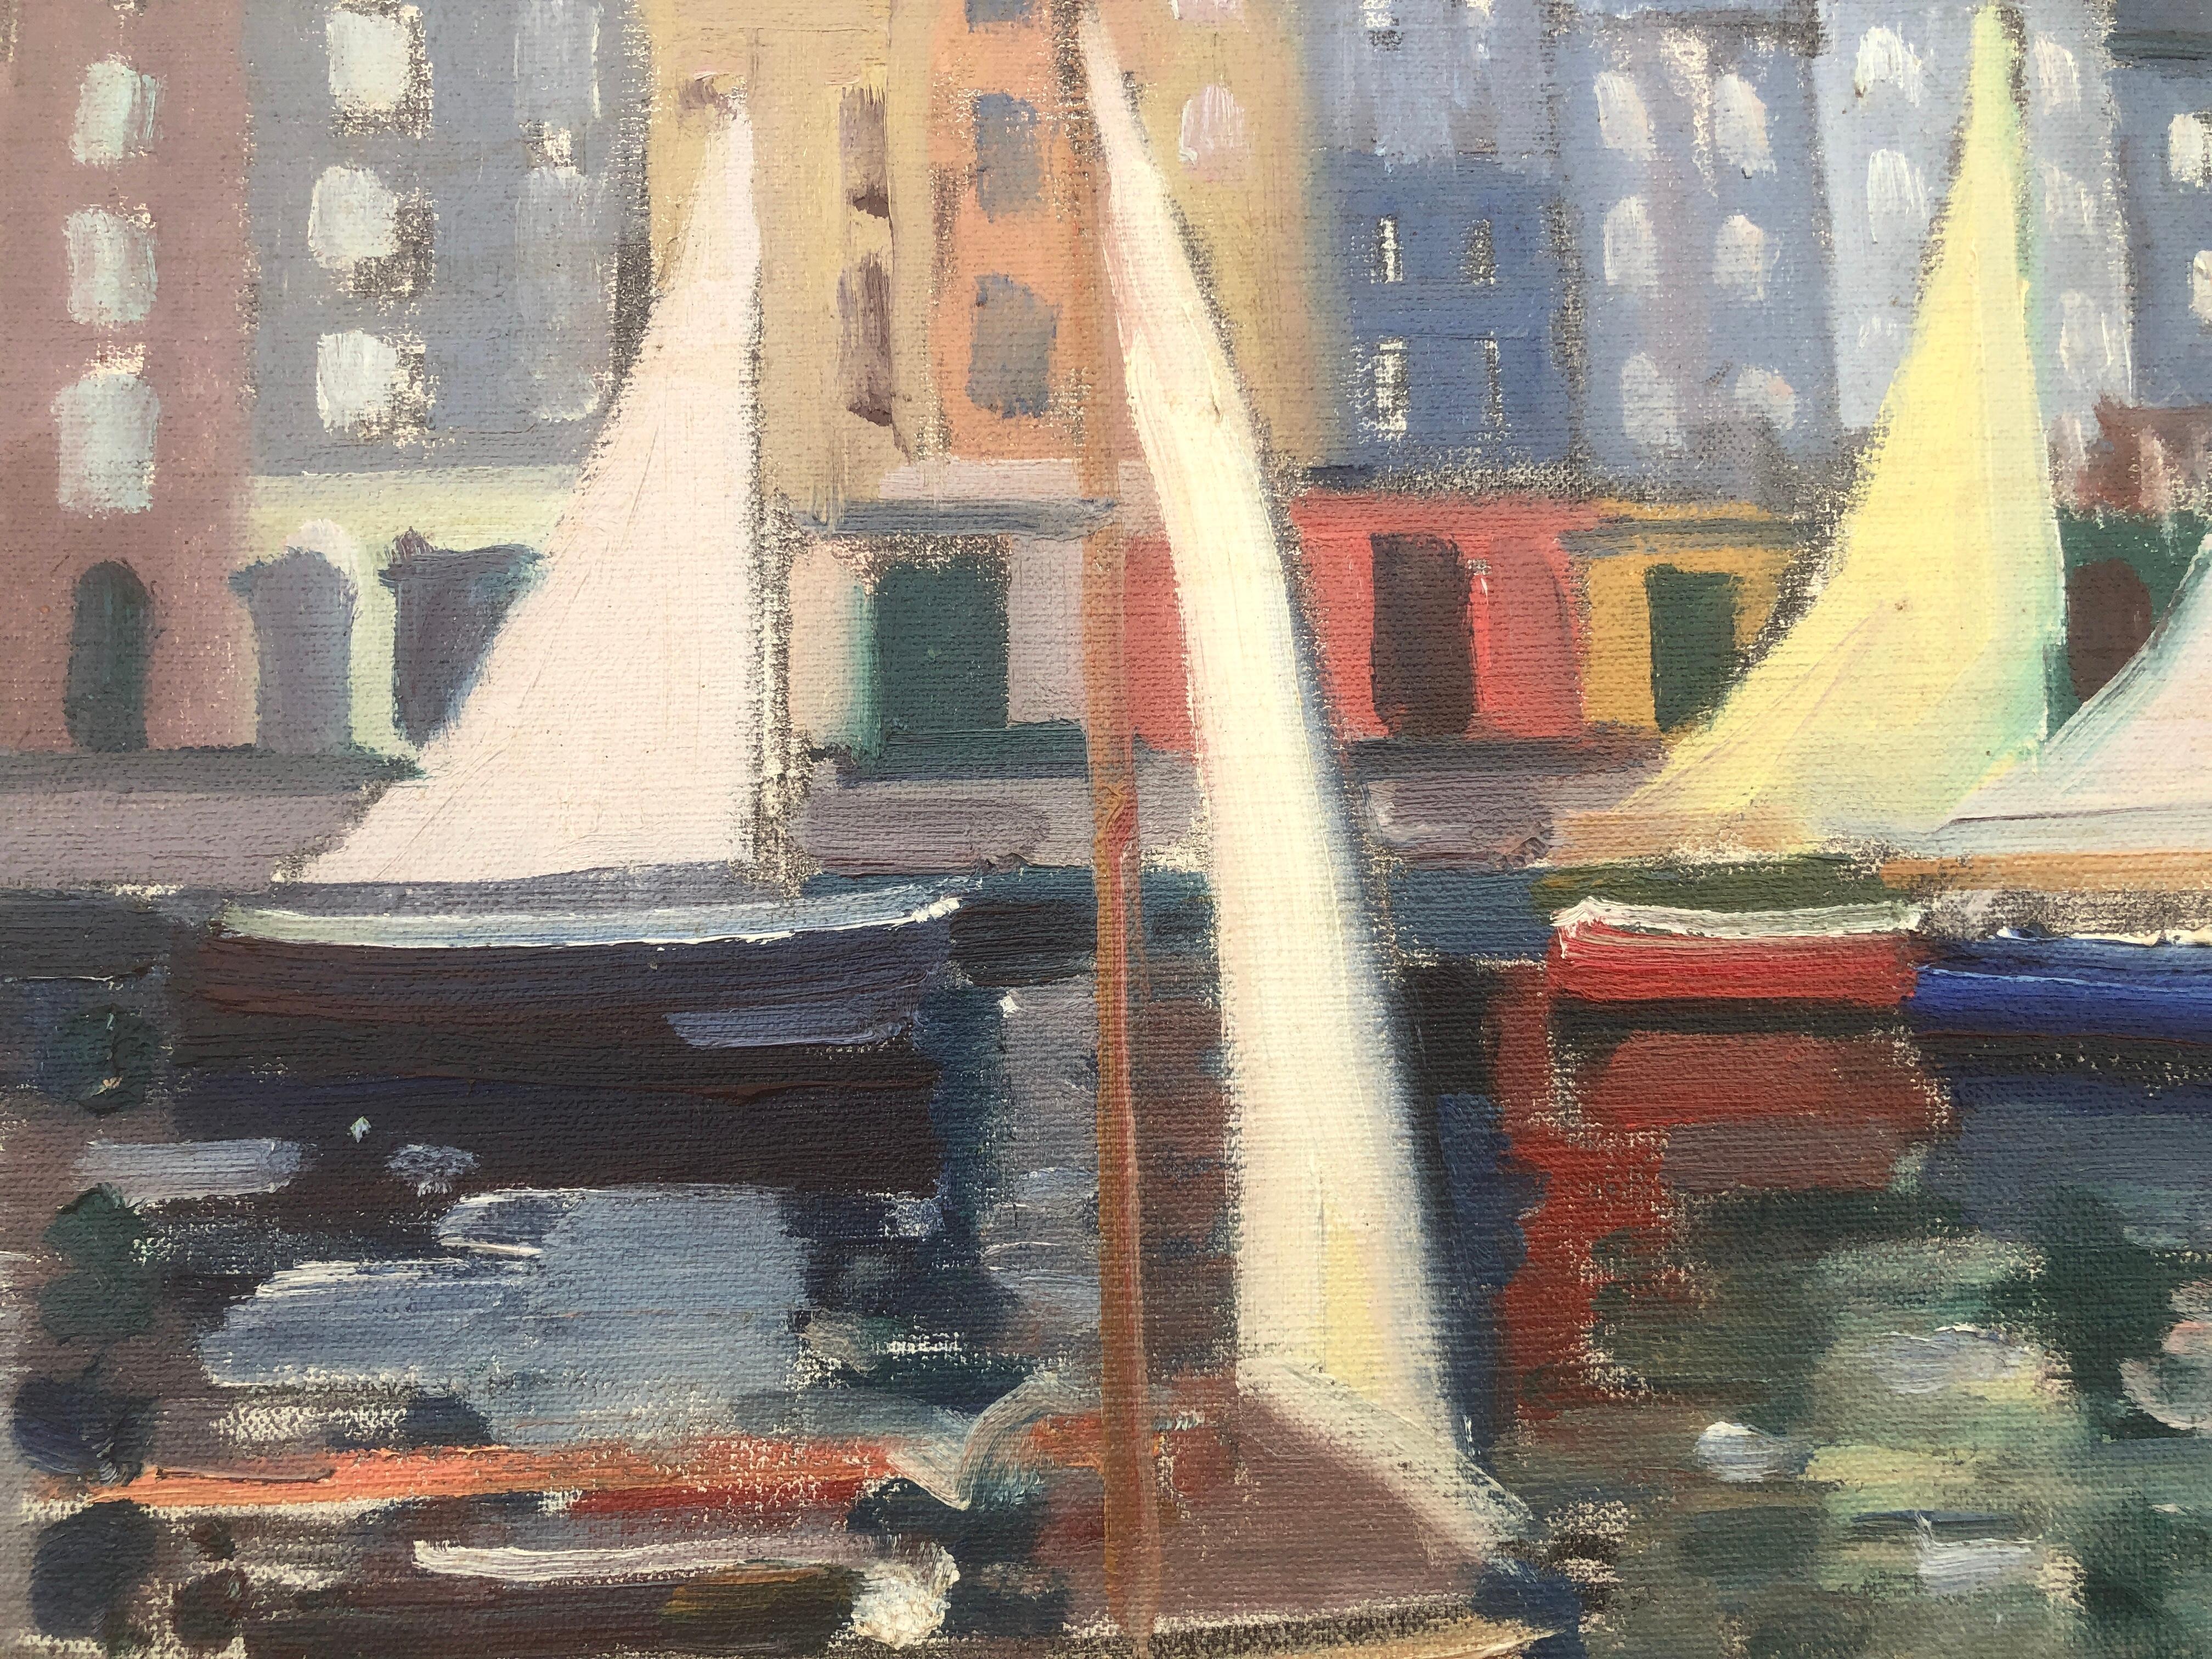 Honfleur France huile sur toile peinture paysage marin paysage urbain - Post-impressionnisme Painting par Rafael Duran Benet